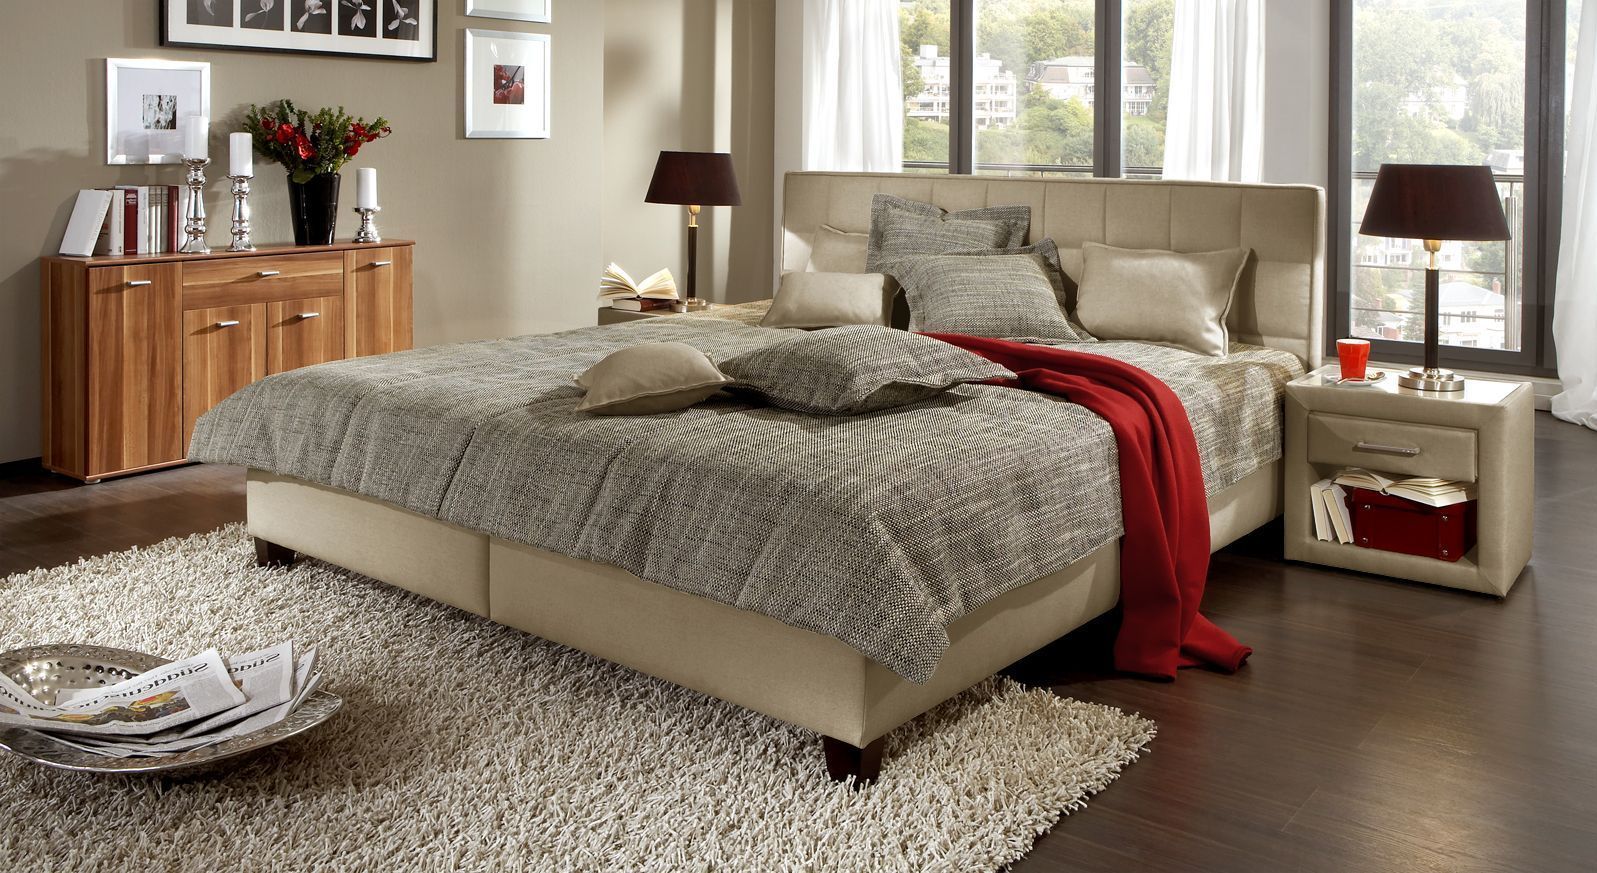 Das hochwertige Polsterbett erhalten Sie in der Farbe natur online bei Betten.de